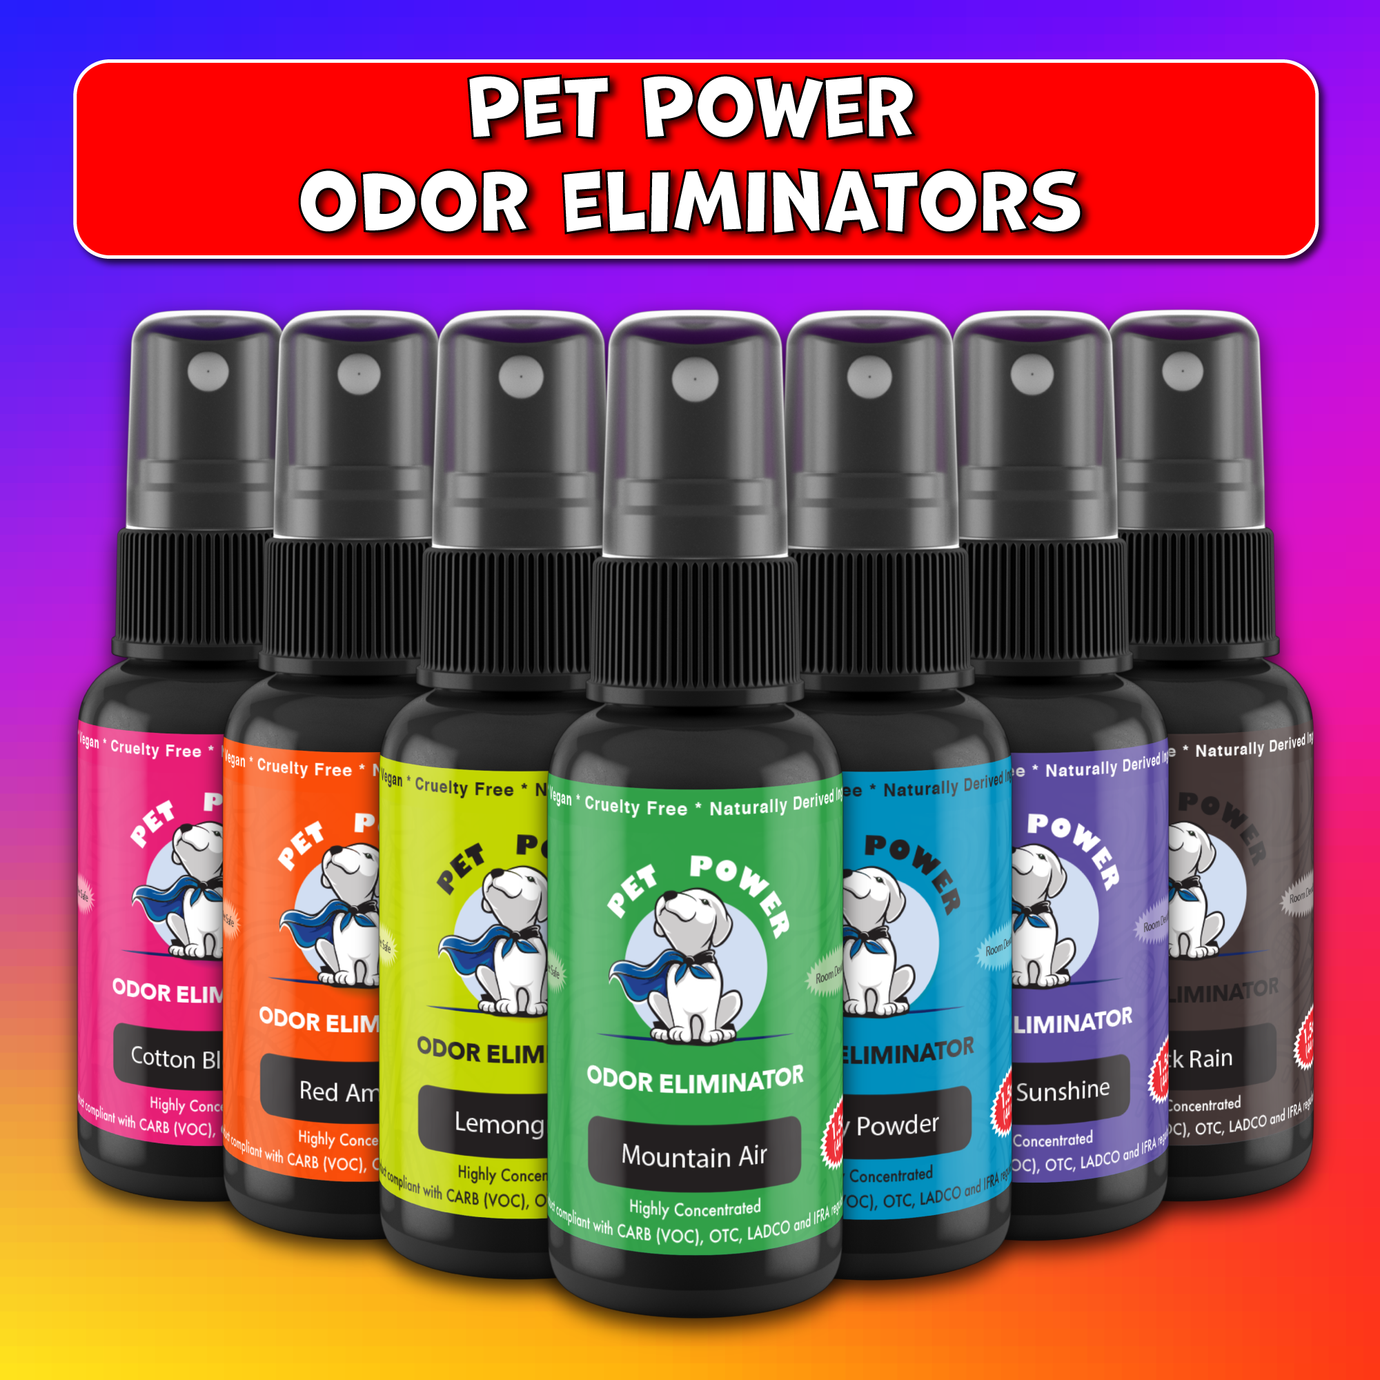 Pet Odor Eliminators